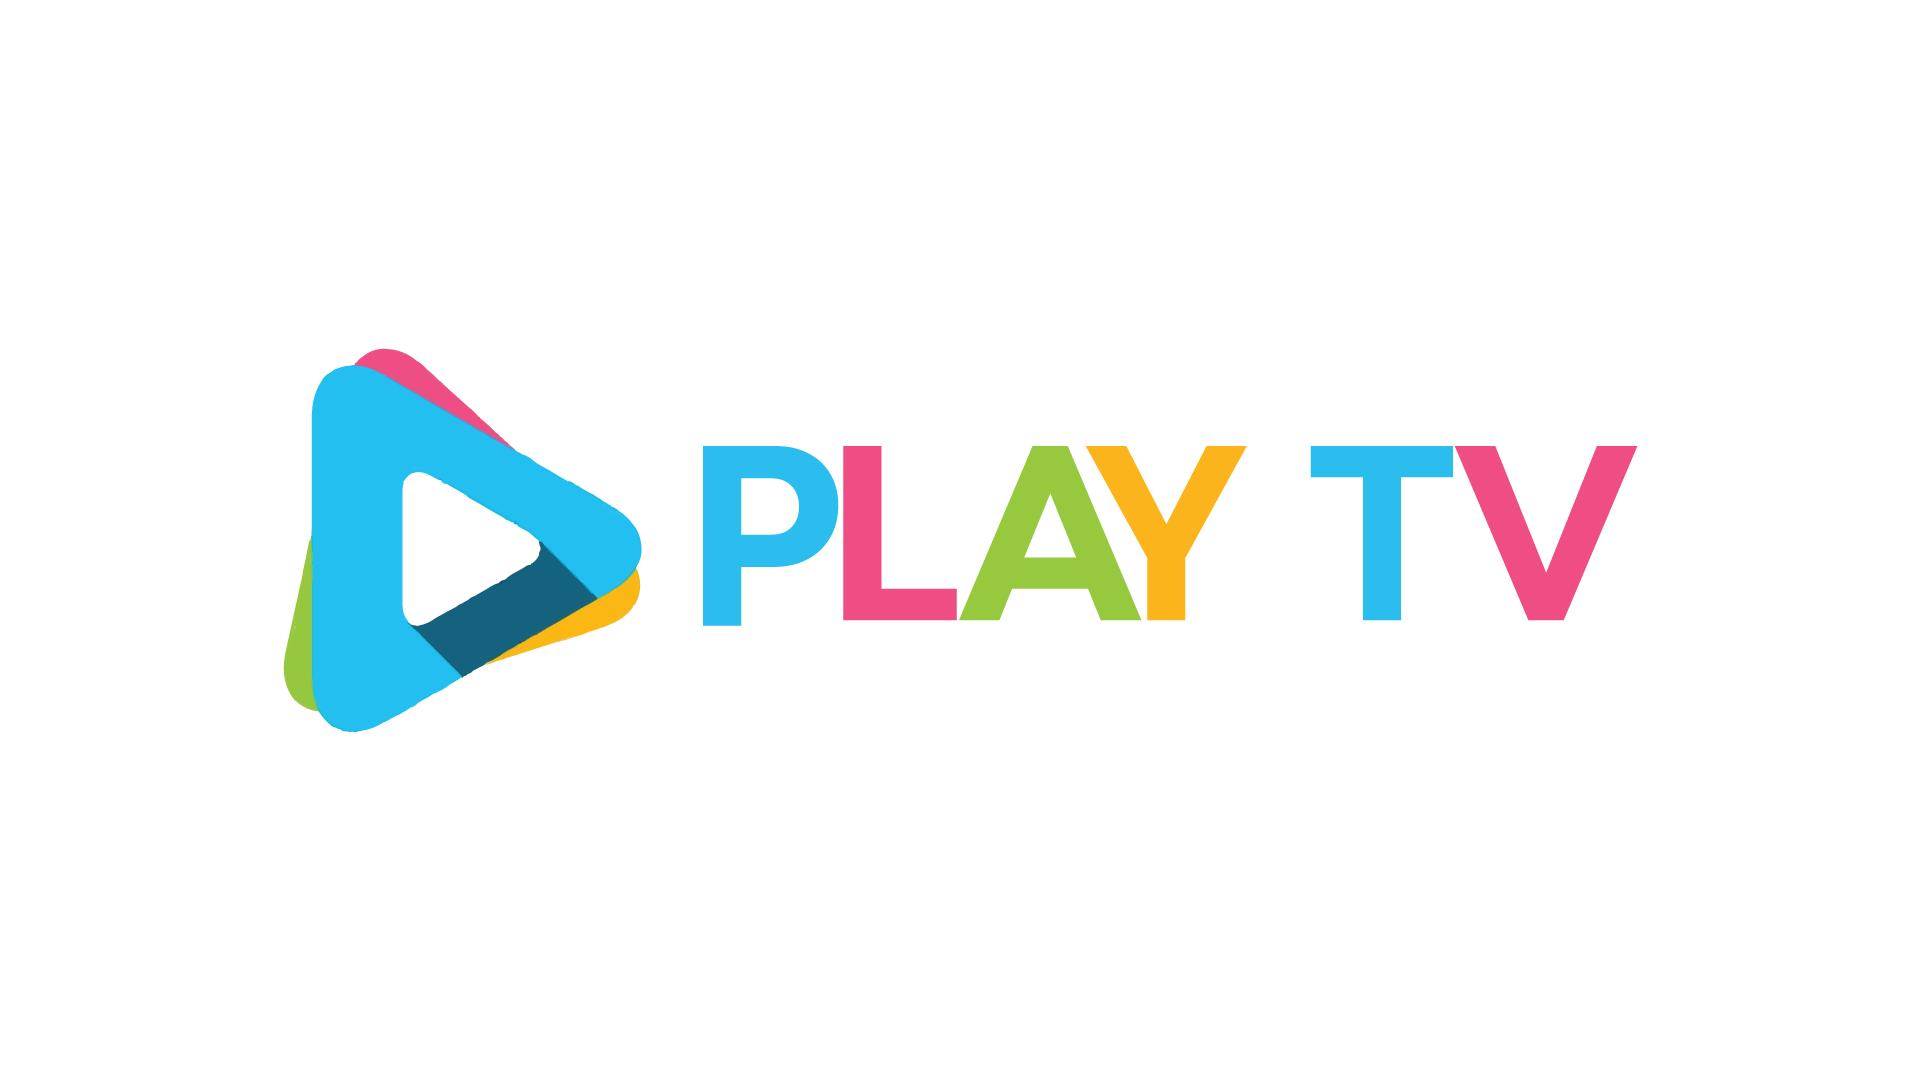 Well play tv. PLAYTV. Турк плей ТВ. IPTV Play логотип. Плей.